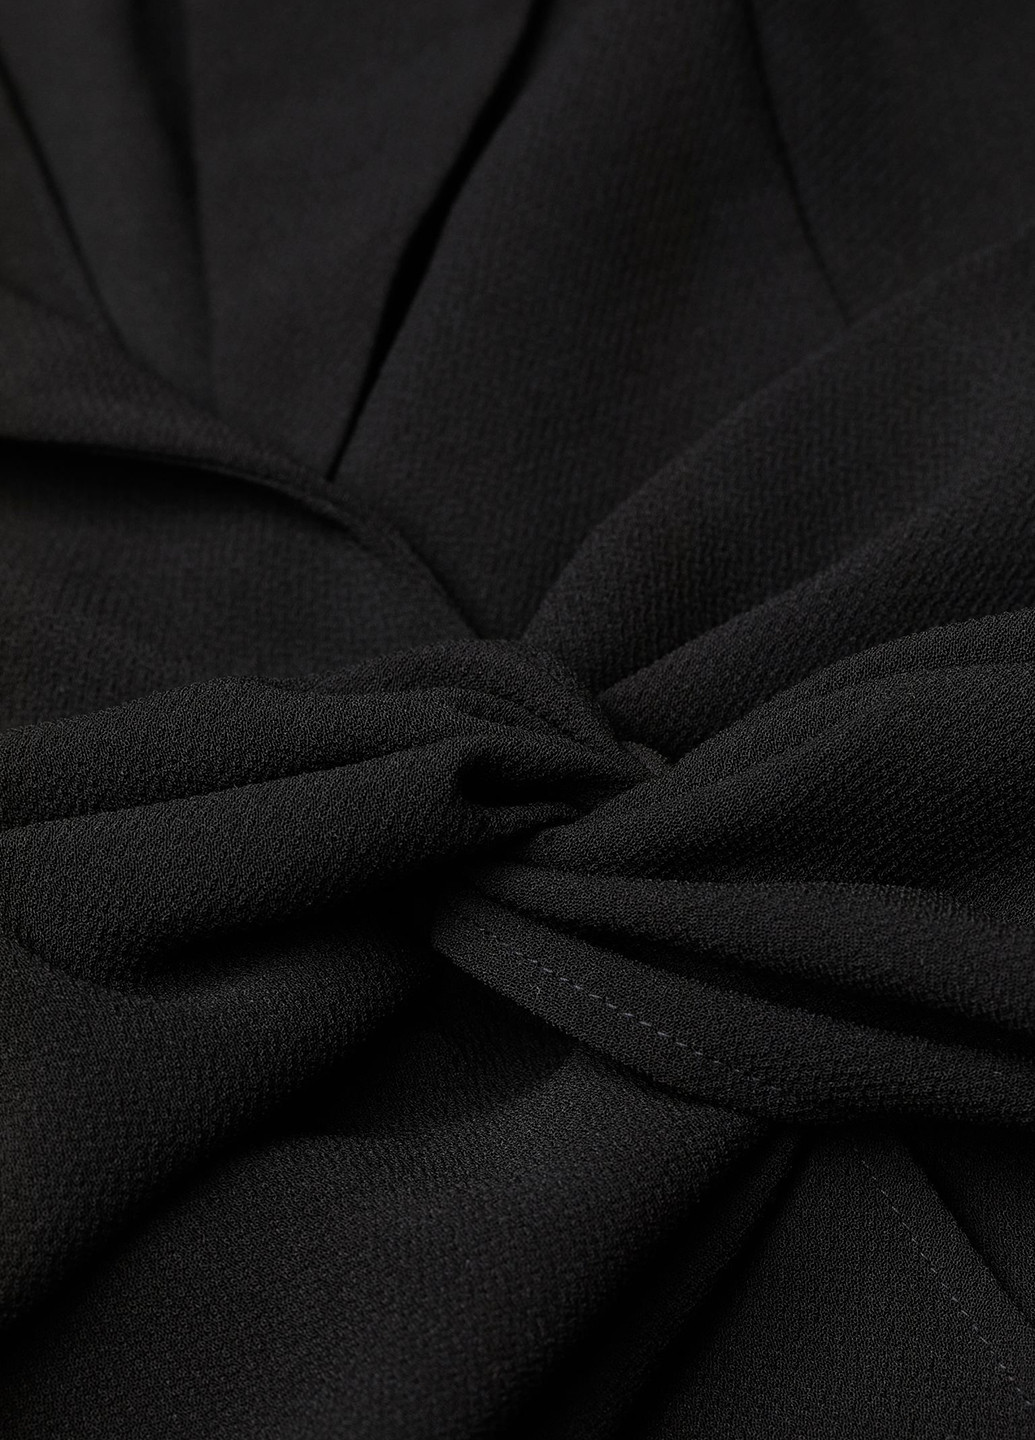 Черное деловое платье платье-жакет H&M однотонное